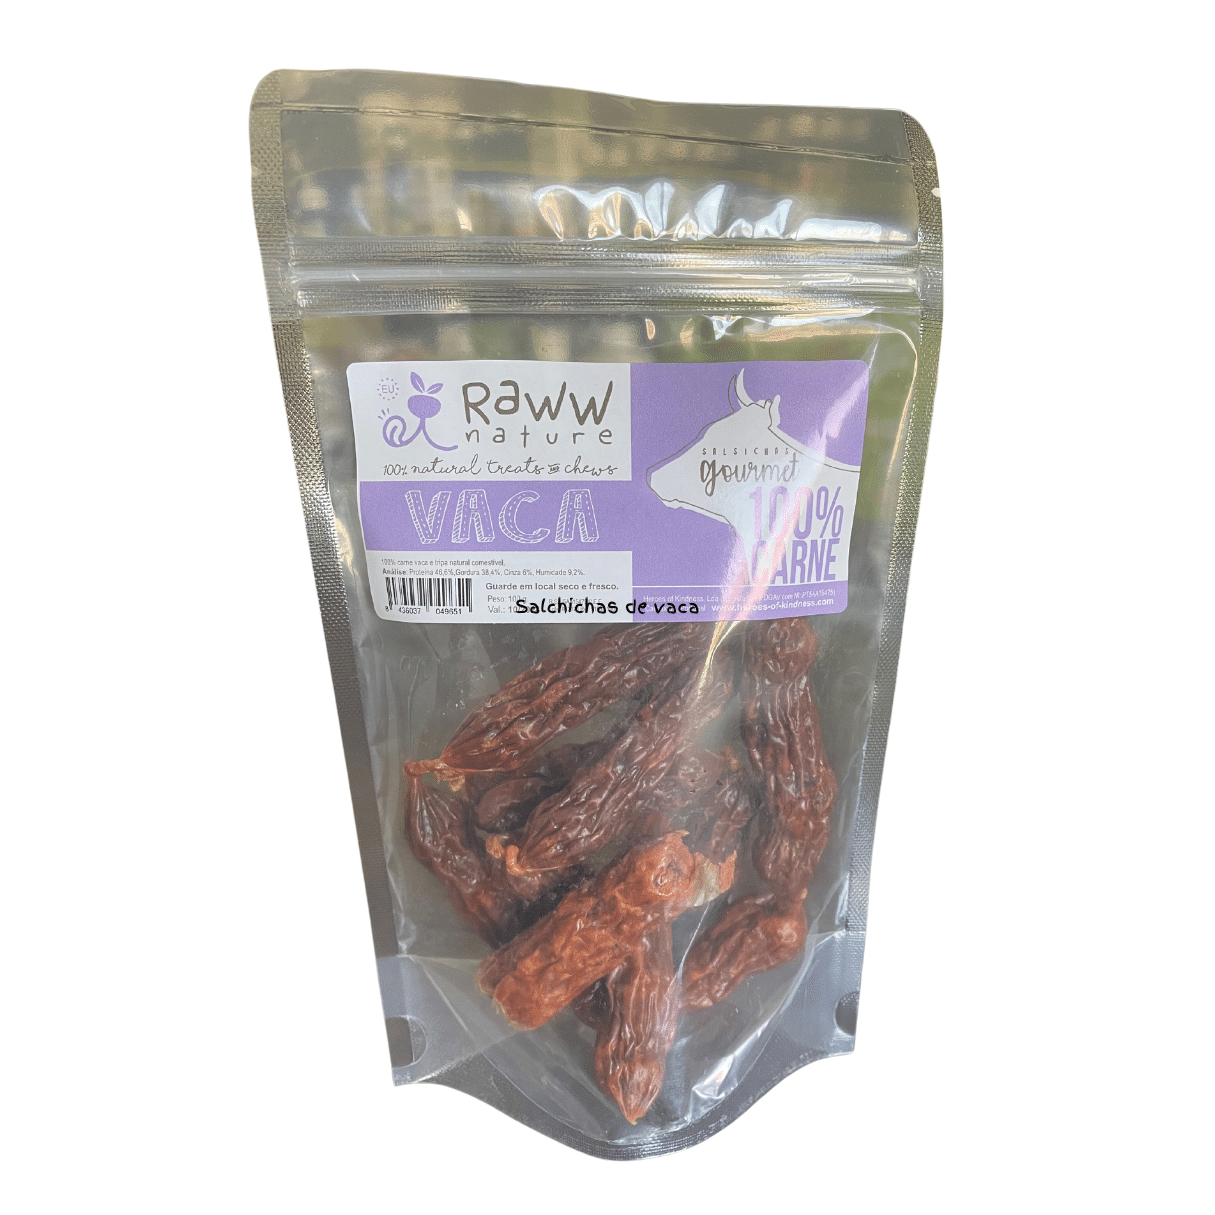 Salchichas de vaca , un gran snack para perros . No contiene cereales ni OGM. Están elaboradas con ingredientes de calidad